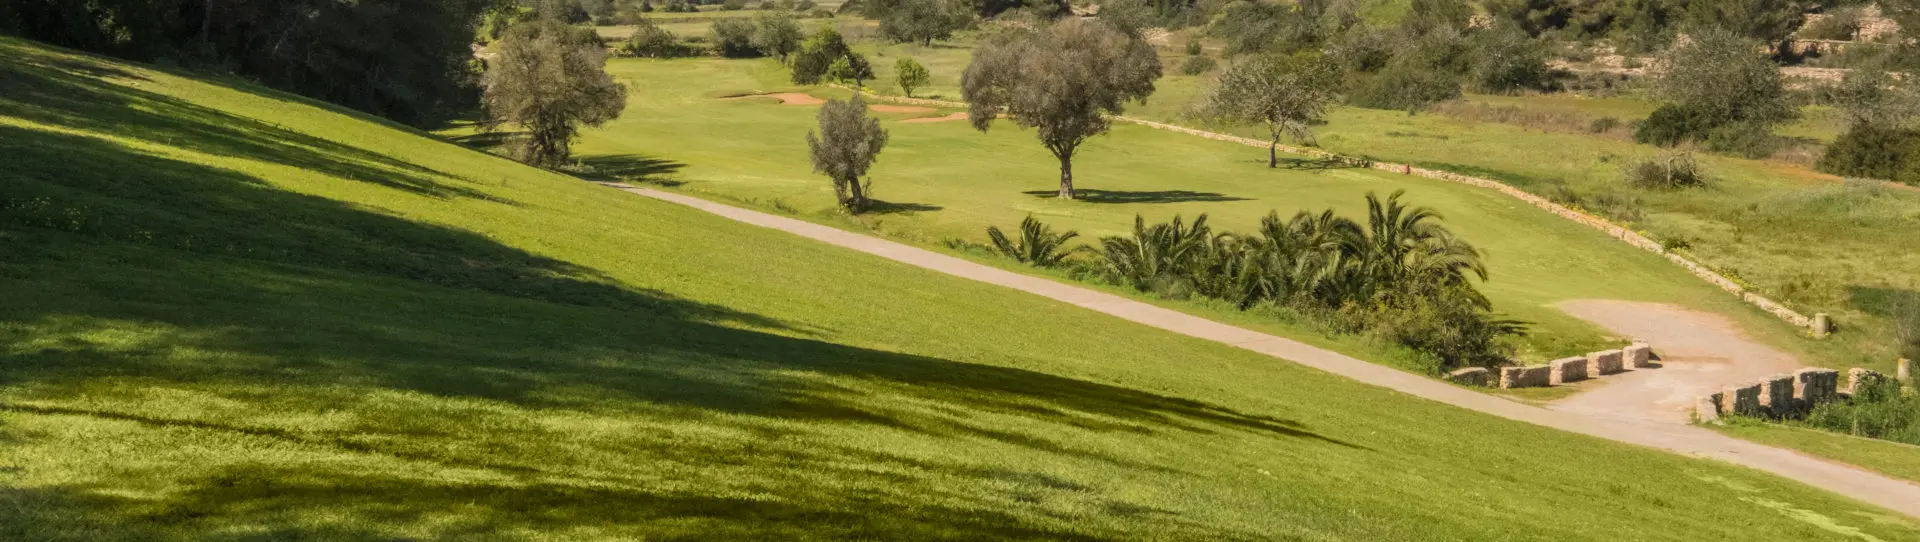 Spain golf courses - Golf de Ibiza I - Photo 2